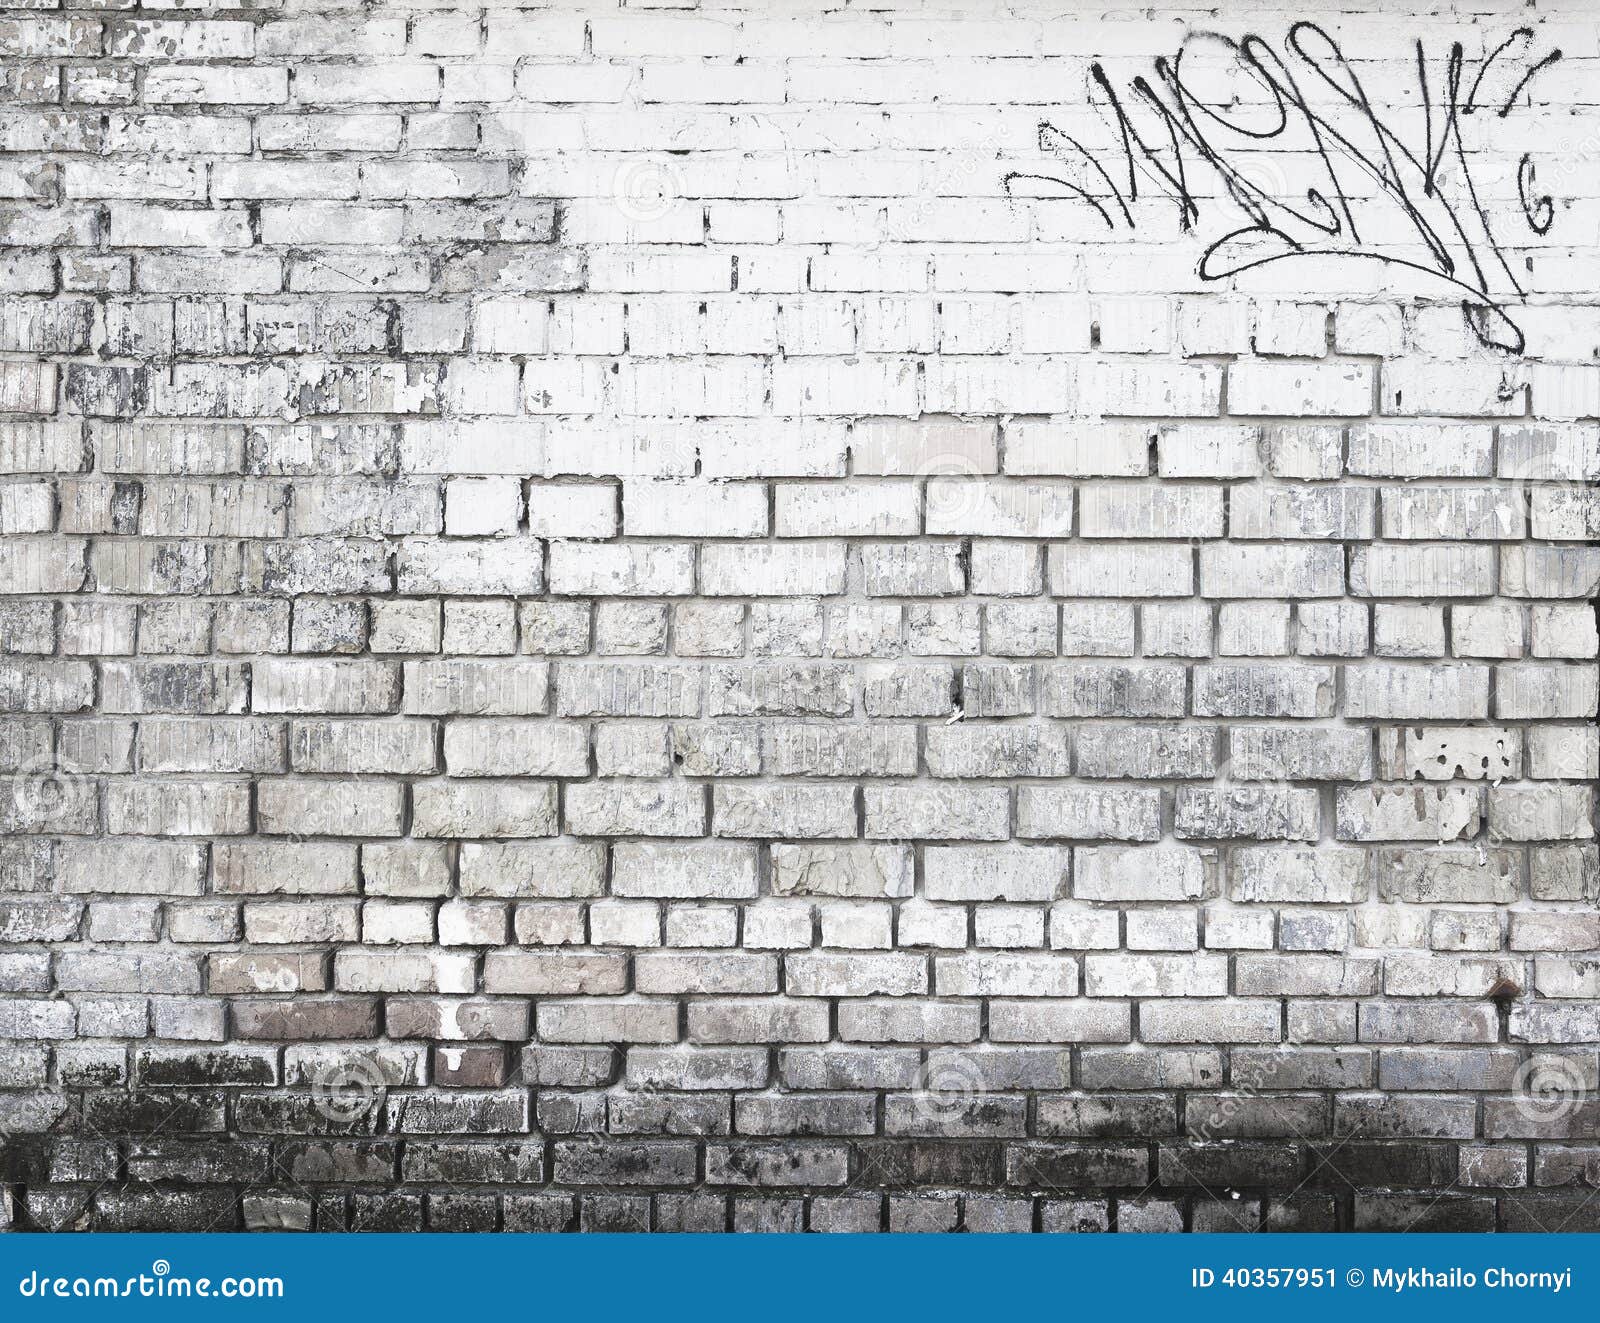 vragen bereik lezing Bakstenen Muur in Zwart-wit Stock Afbeelding - Image of cement, baksteen:  40357951